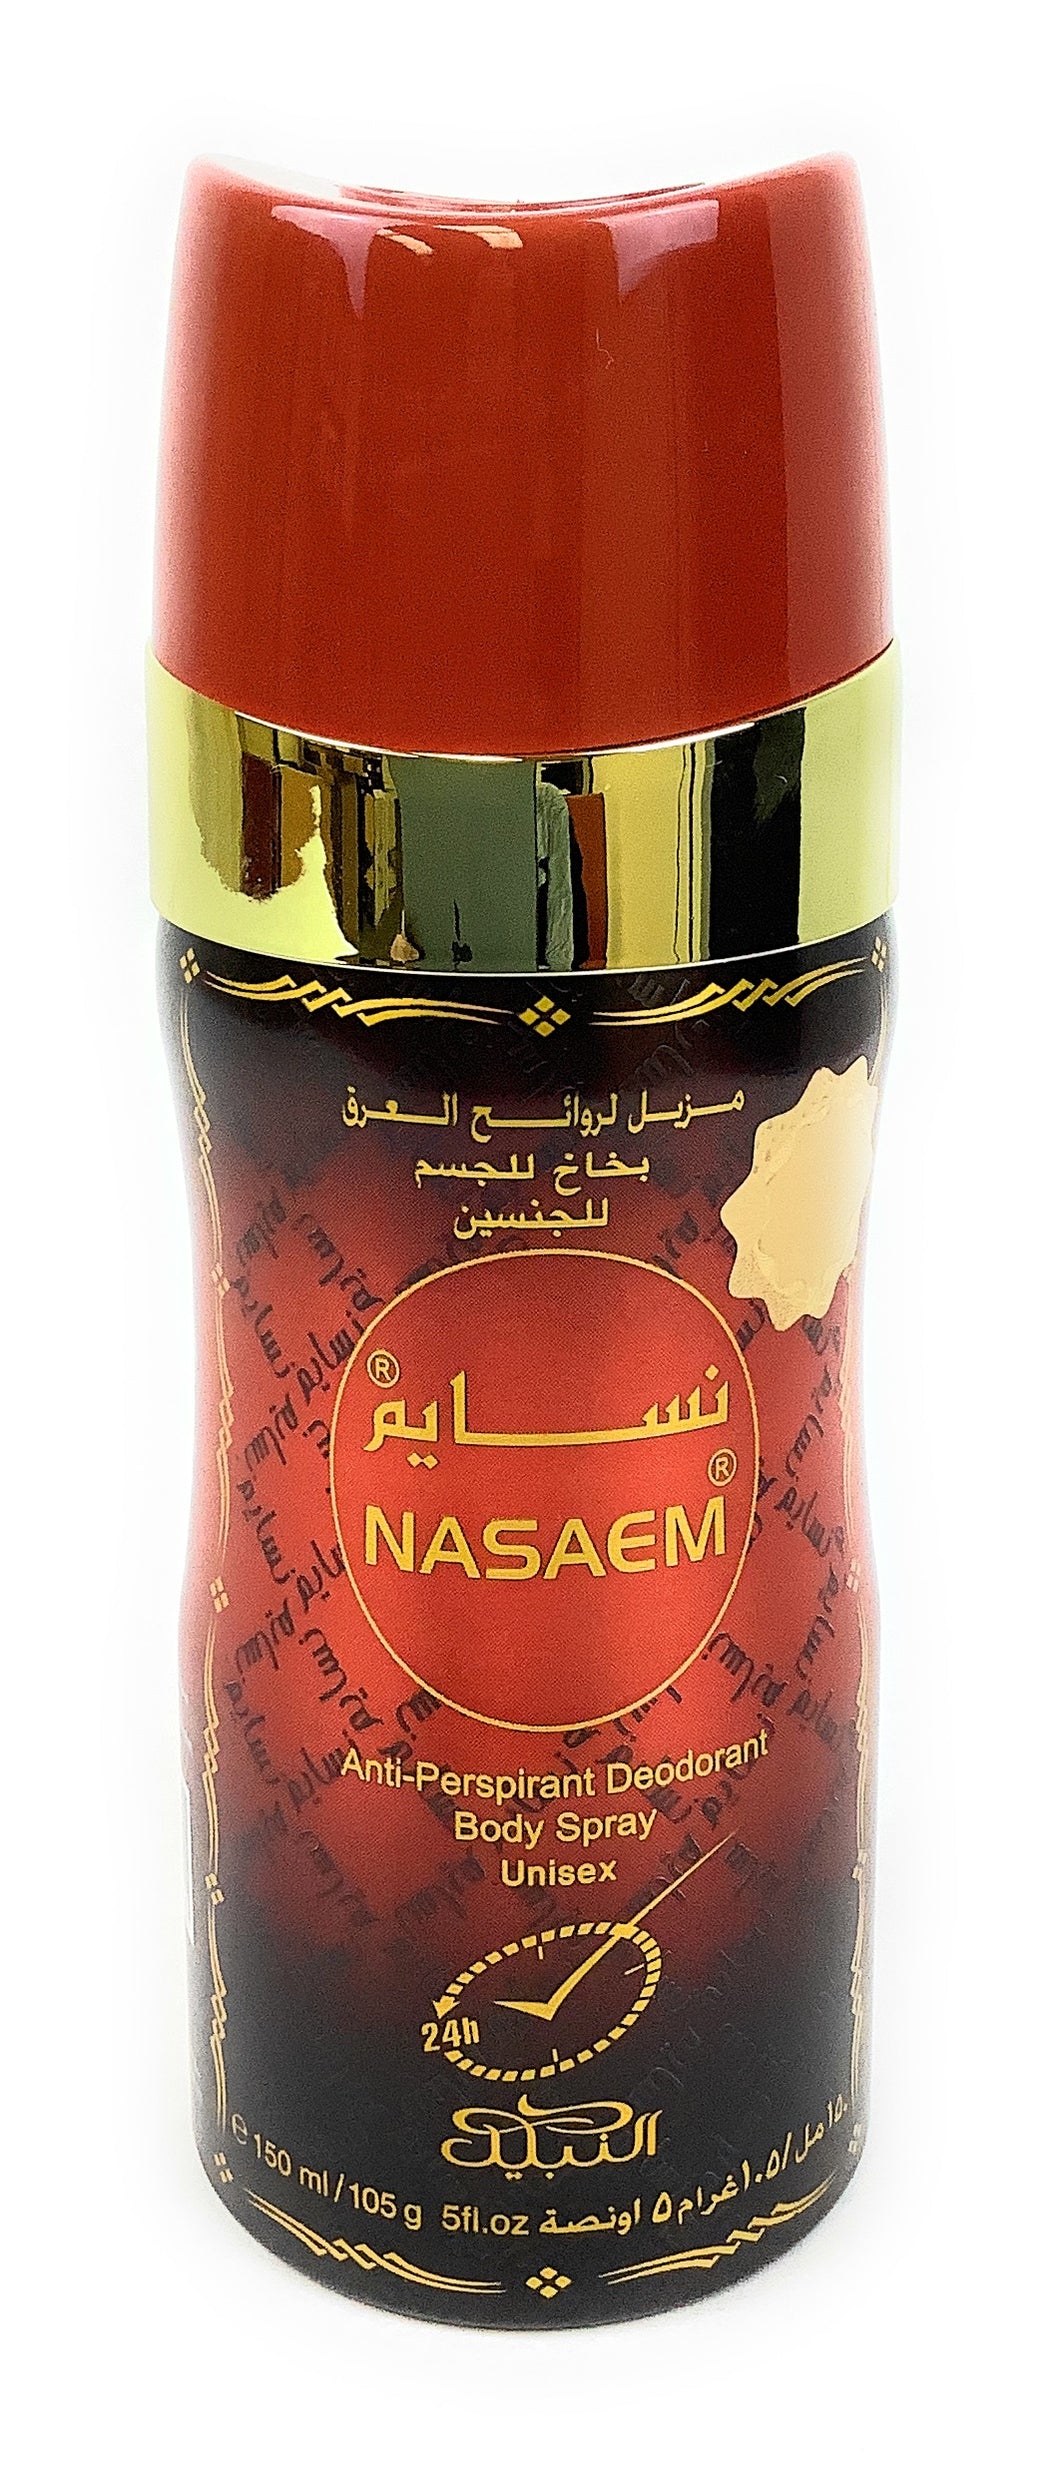 Nasaem Antiperspirant Deodorant Unisex Body Spray (150ml/105g/5fl.oz)